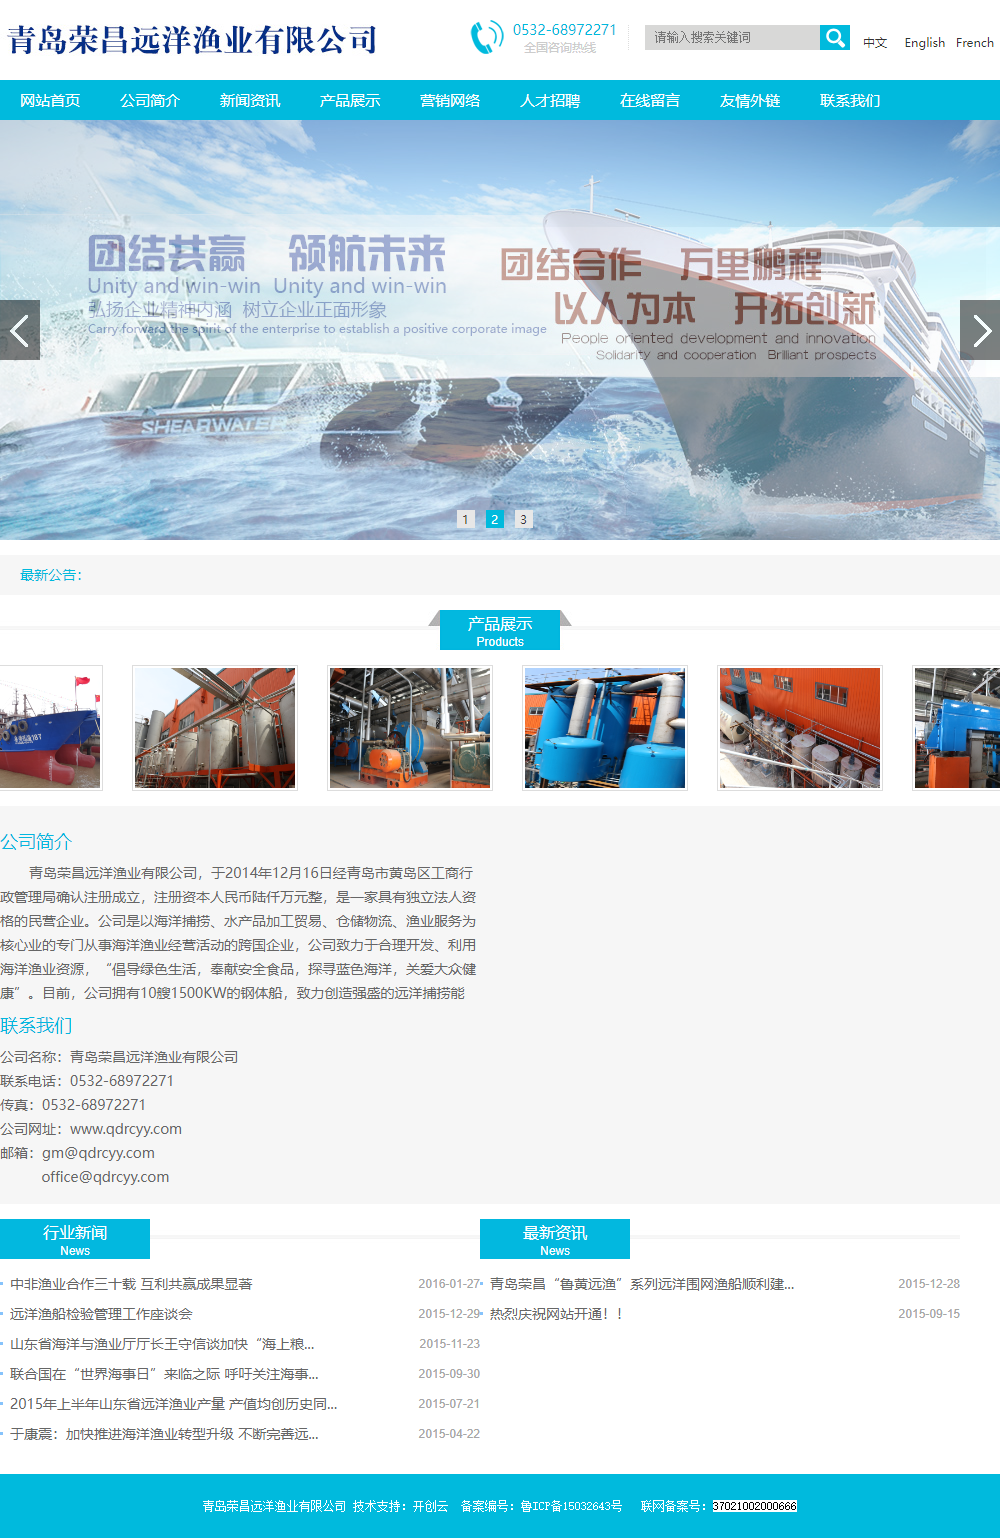 青岛荣昌远洋渔业有限公司网站案例